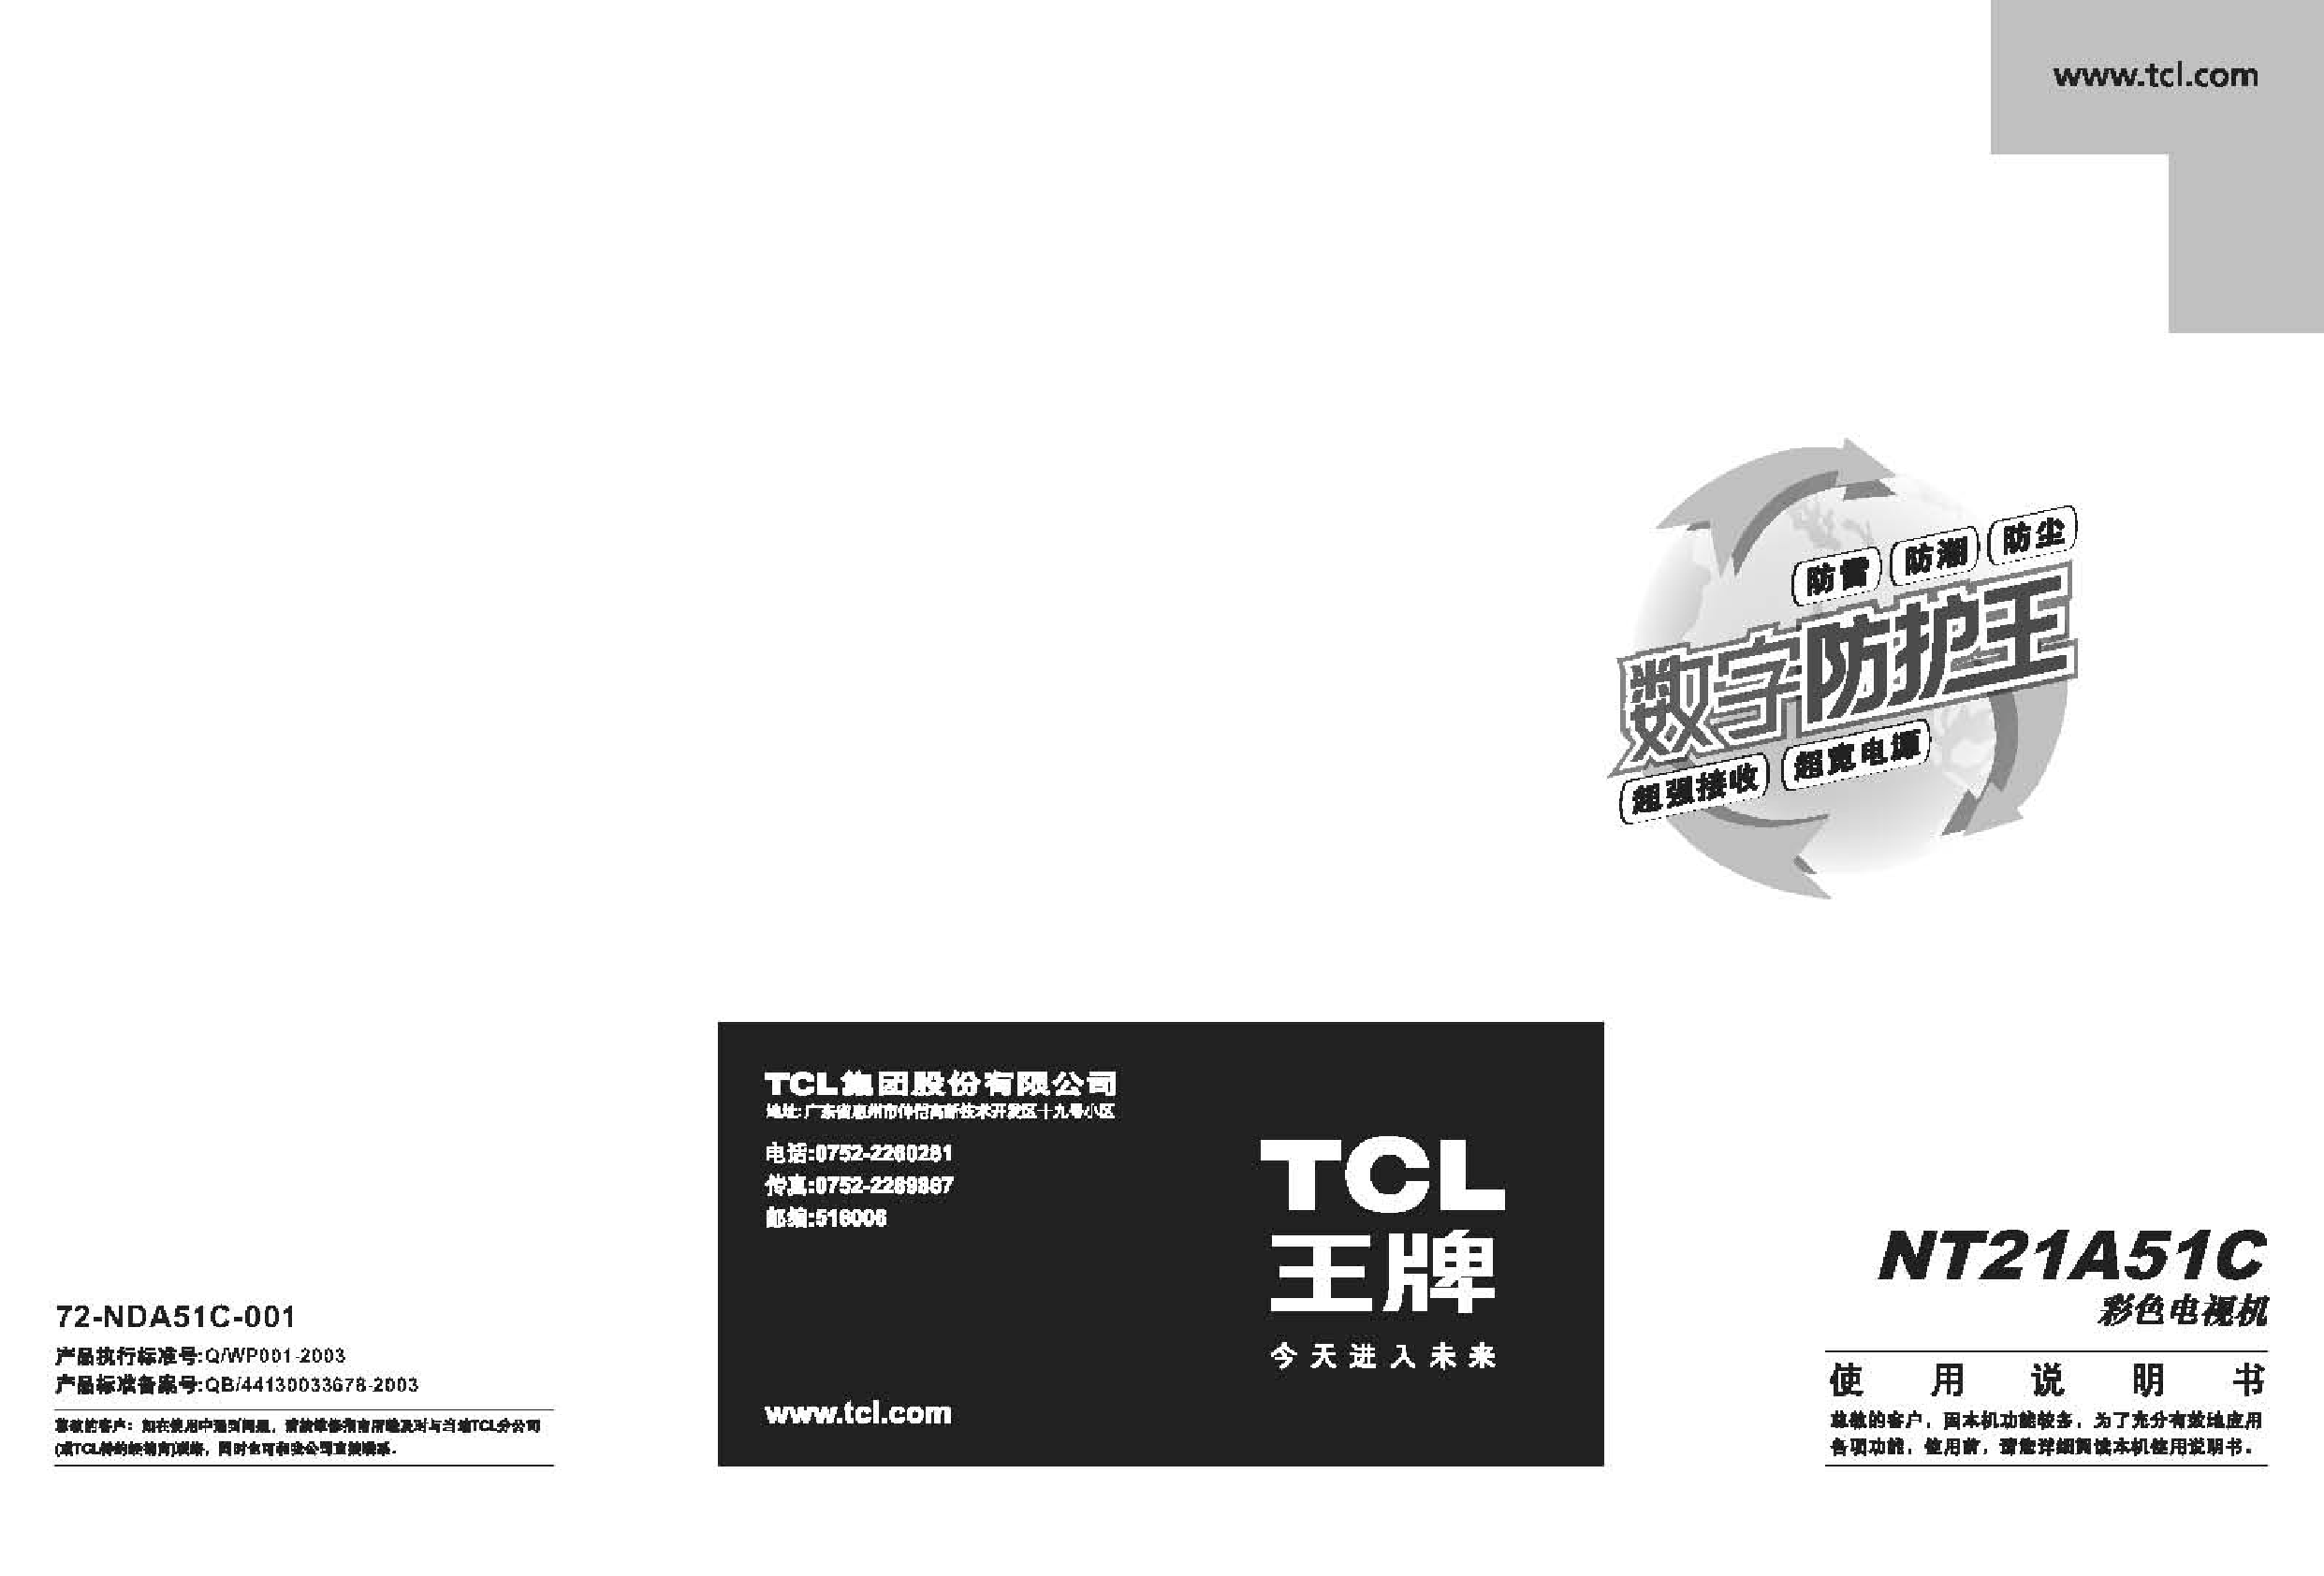 TCL NT21A51C 使用说明书 封面